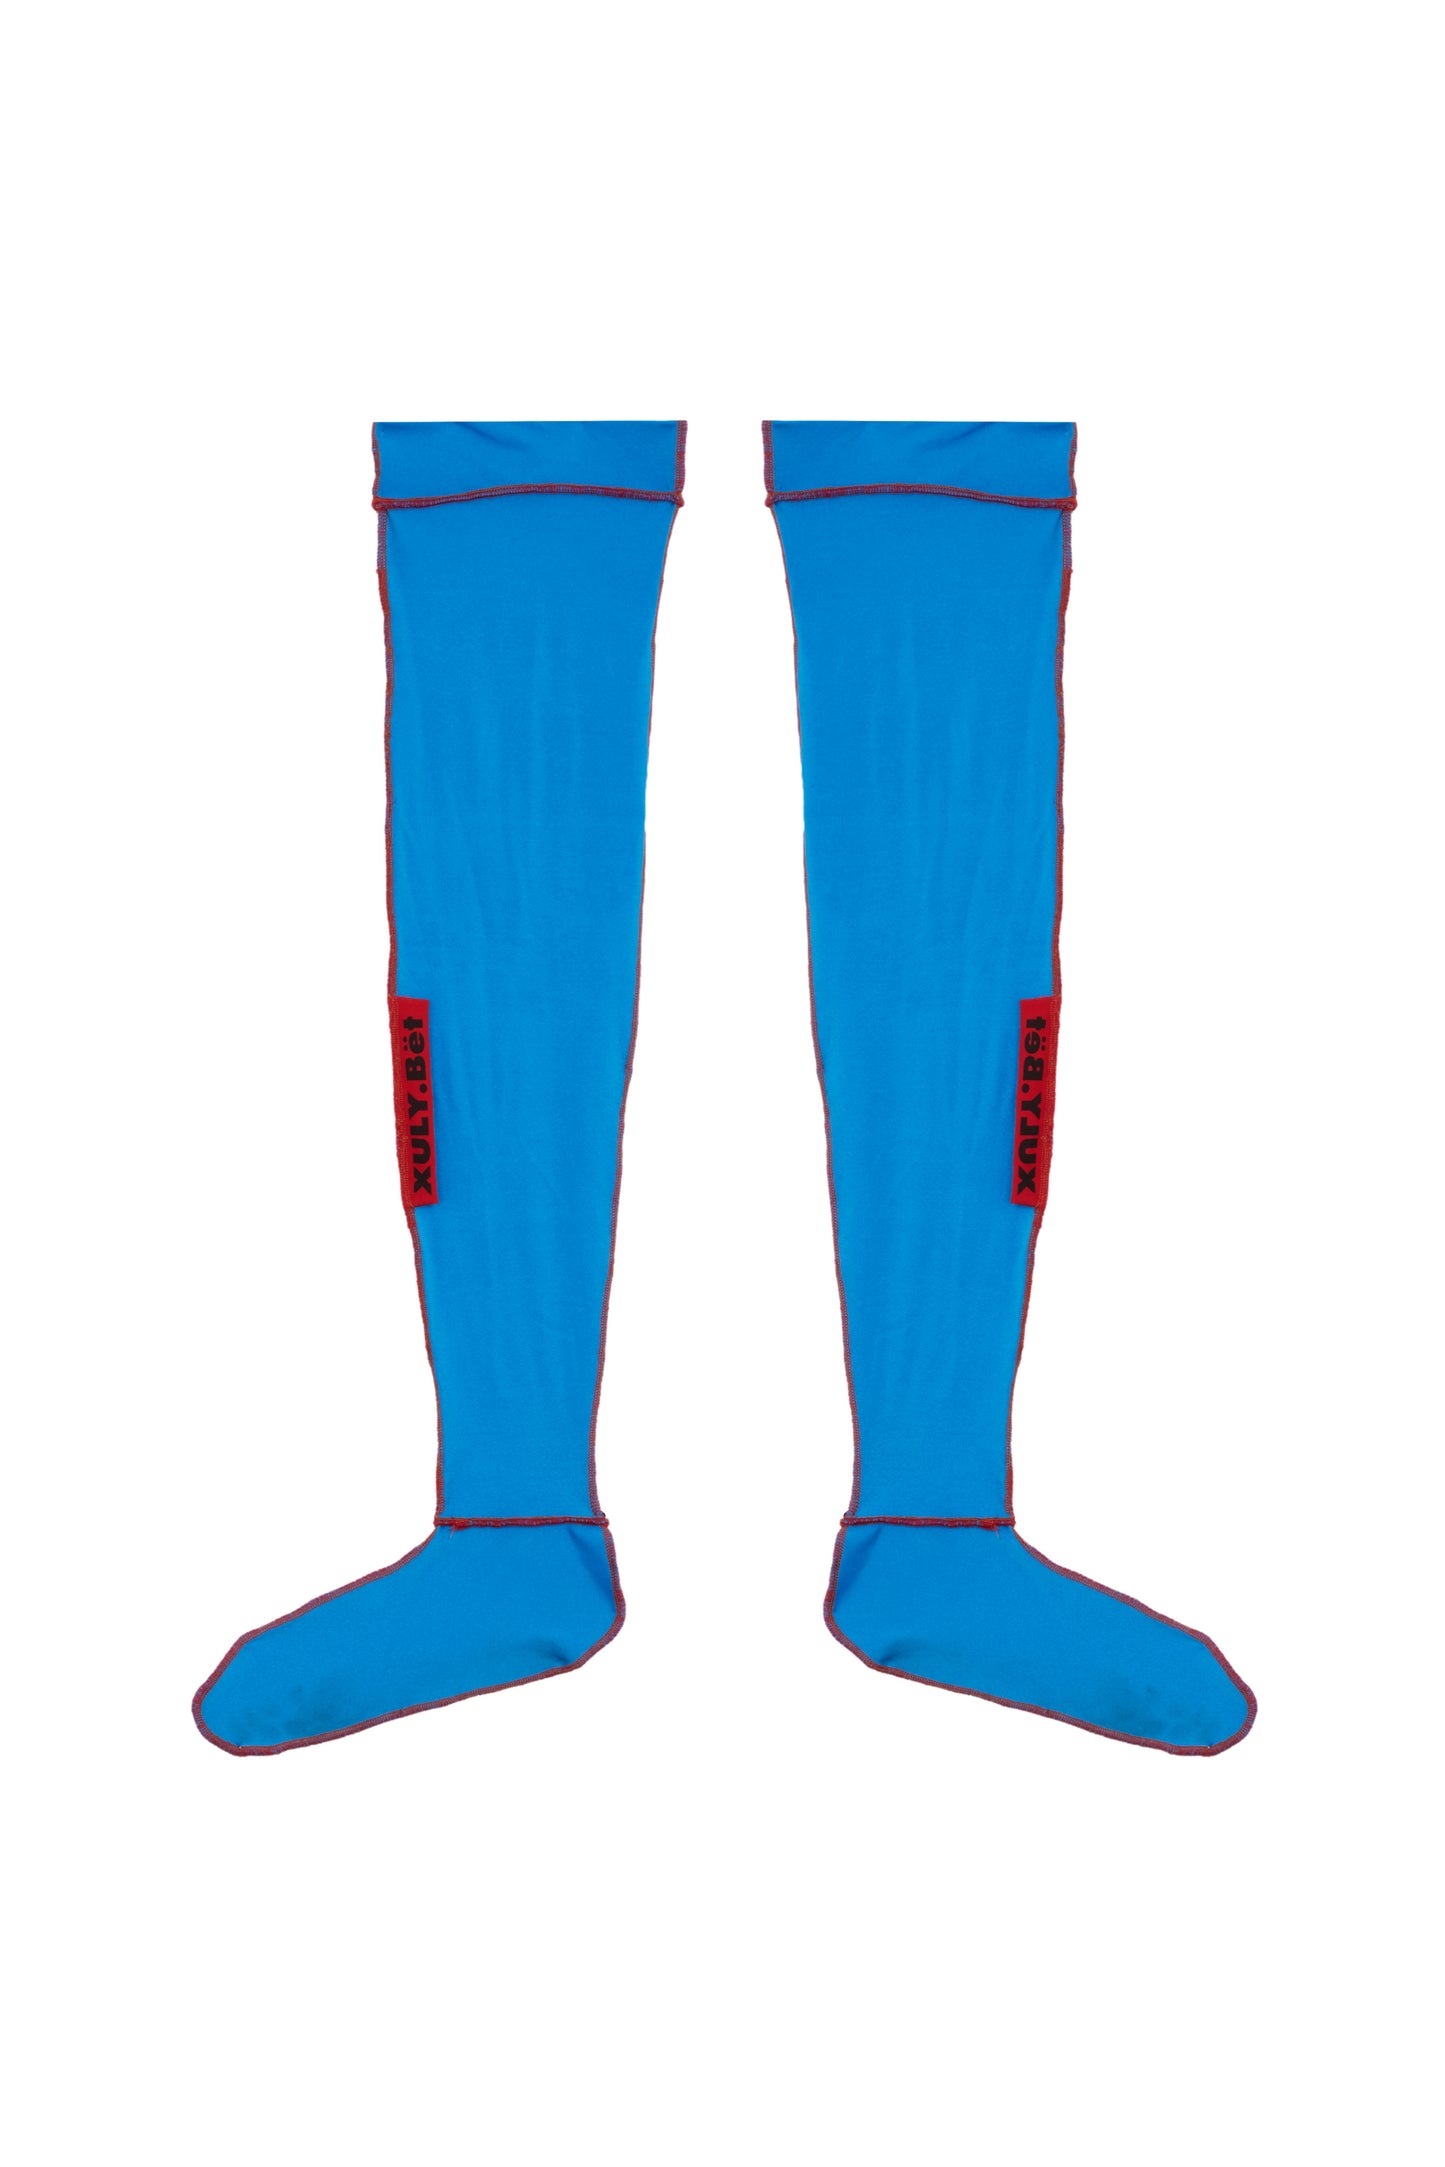 Les chaussettes de foot 'ICONIC BLUE' by XULY.Bët